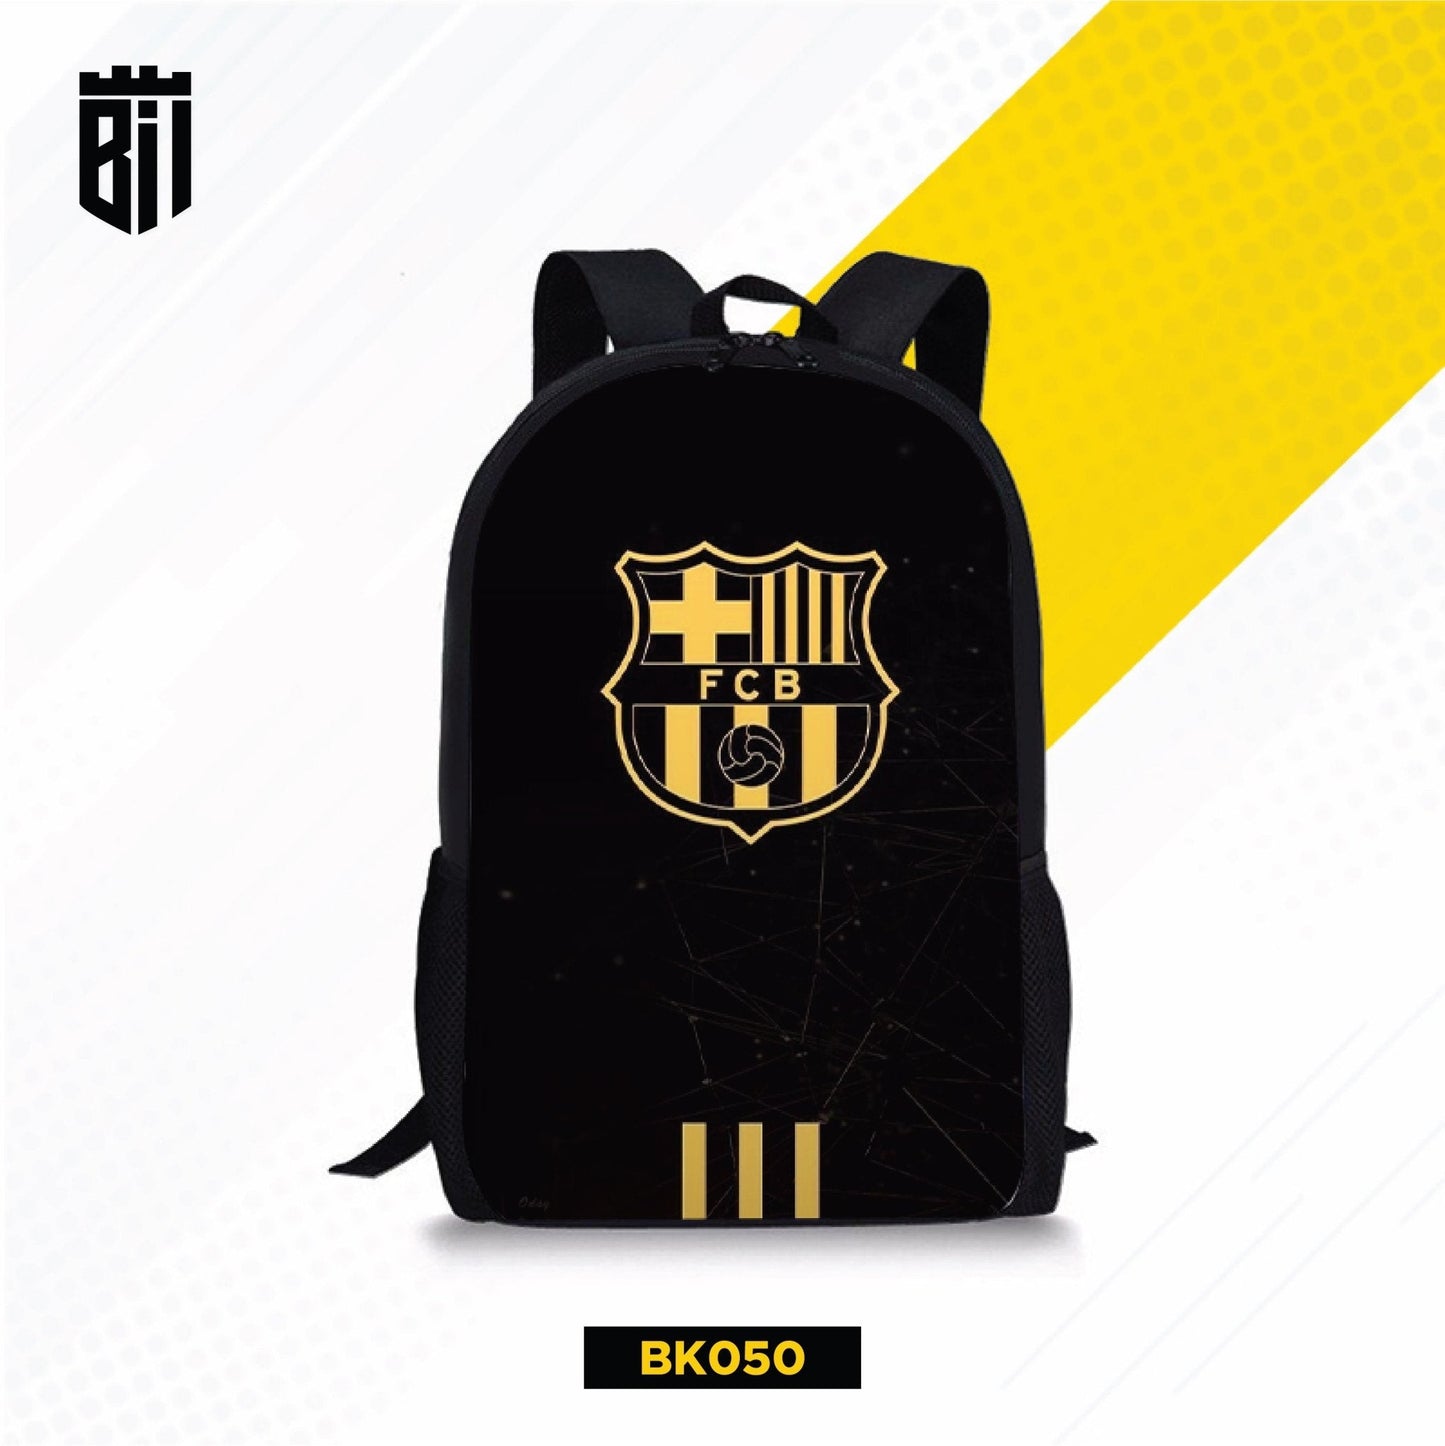 BK050 Black FCB Backpack - BREACHIT